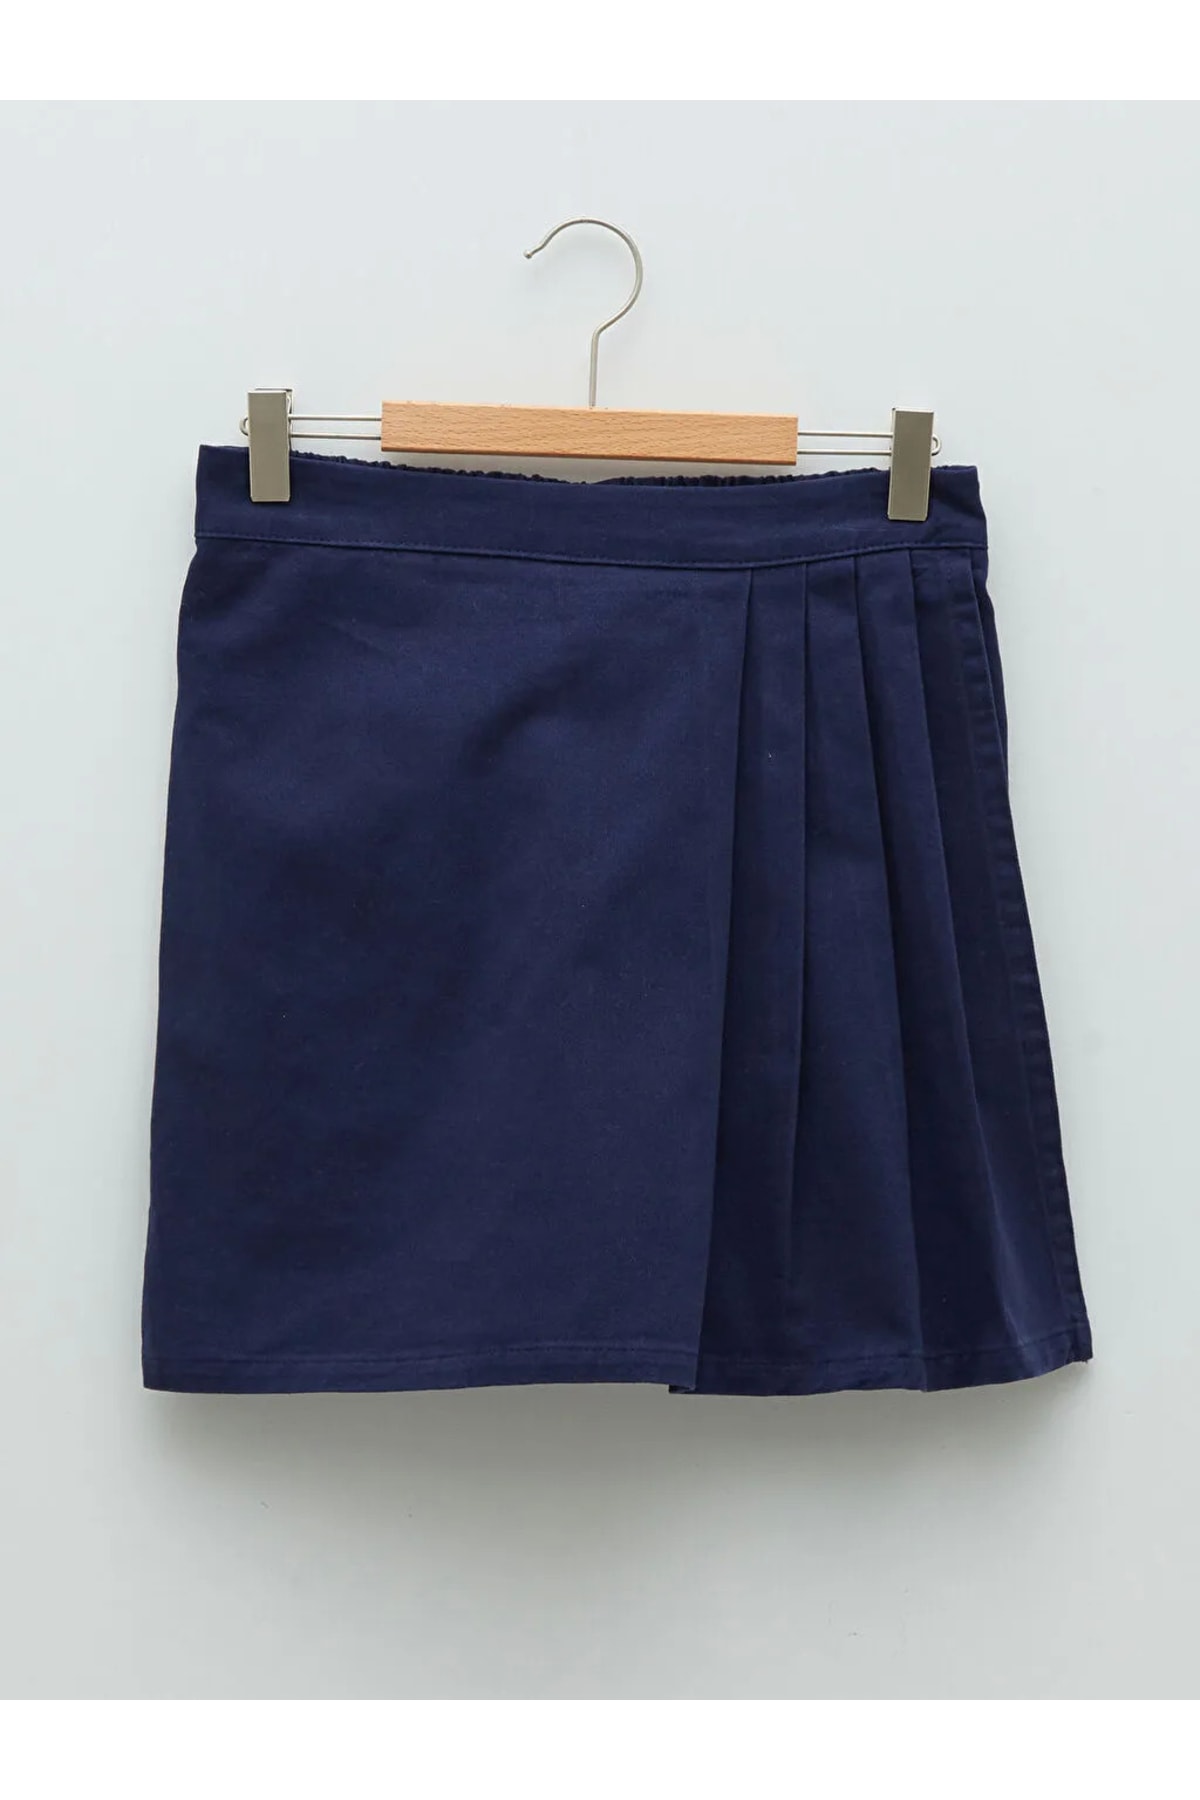 LC Waikiki By Your Fashion Style Girls' Navy Blue Shorts Skirt Basic Gabardine